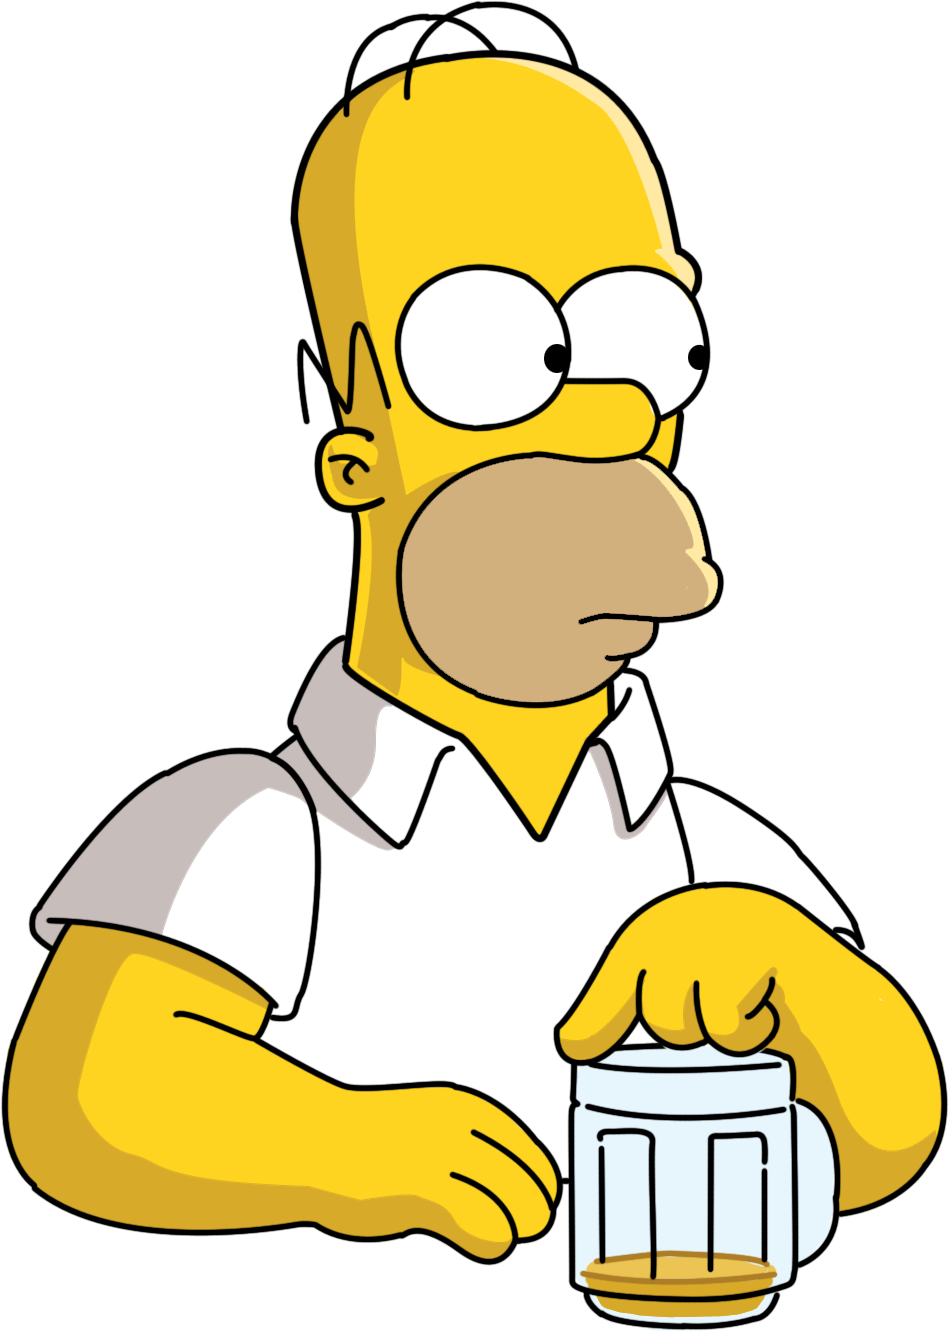 Homer Simpson beer